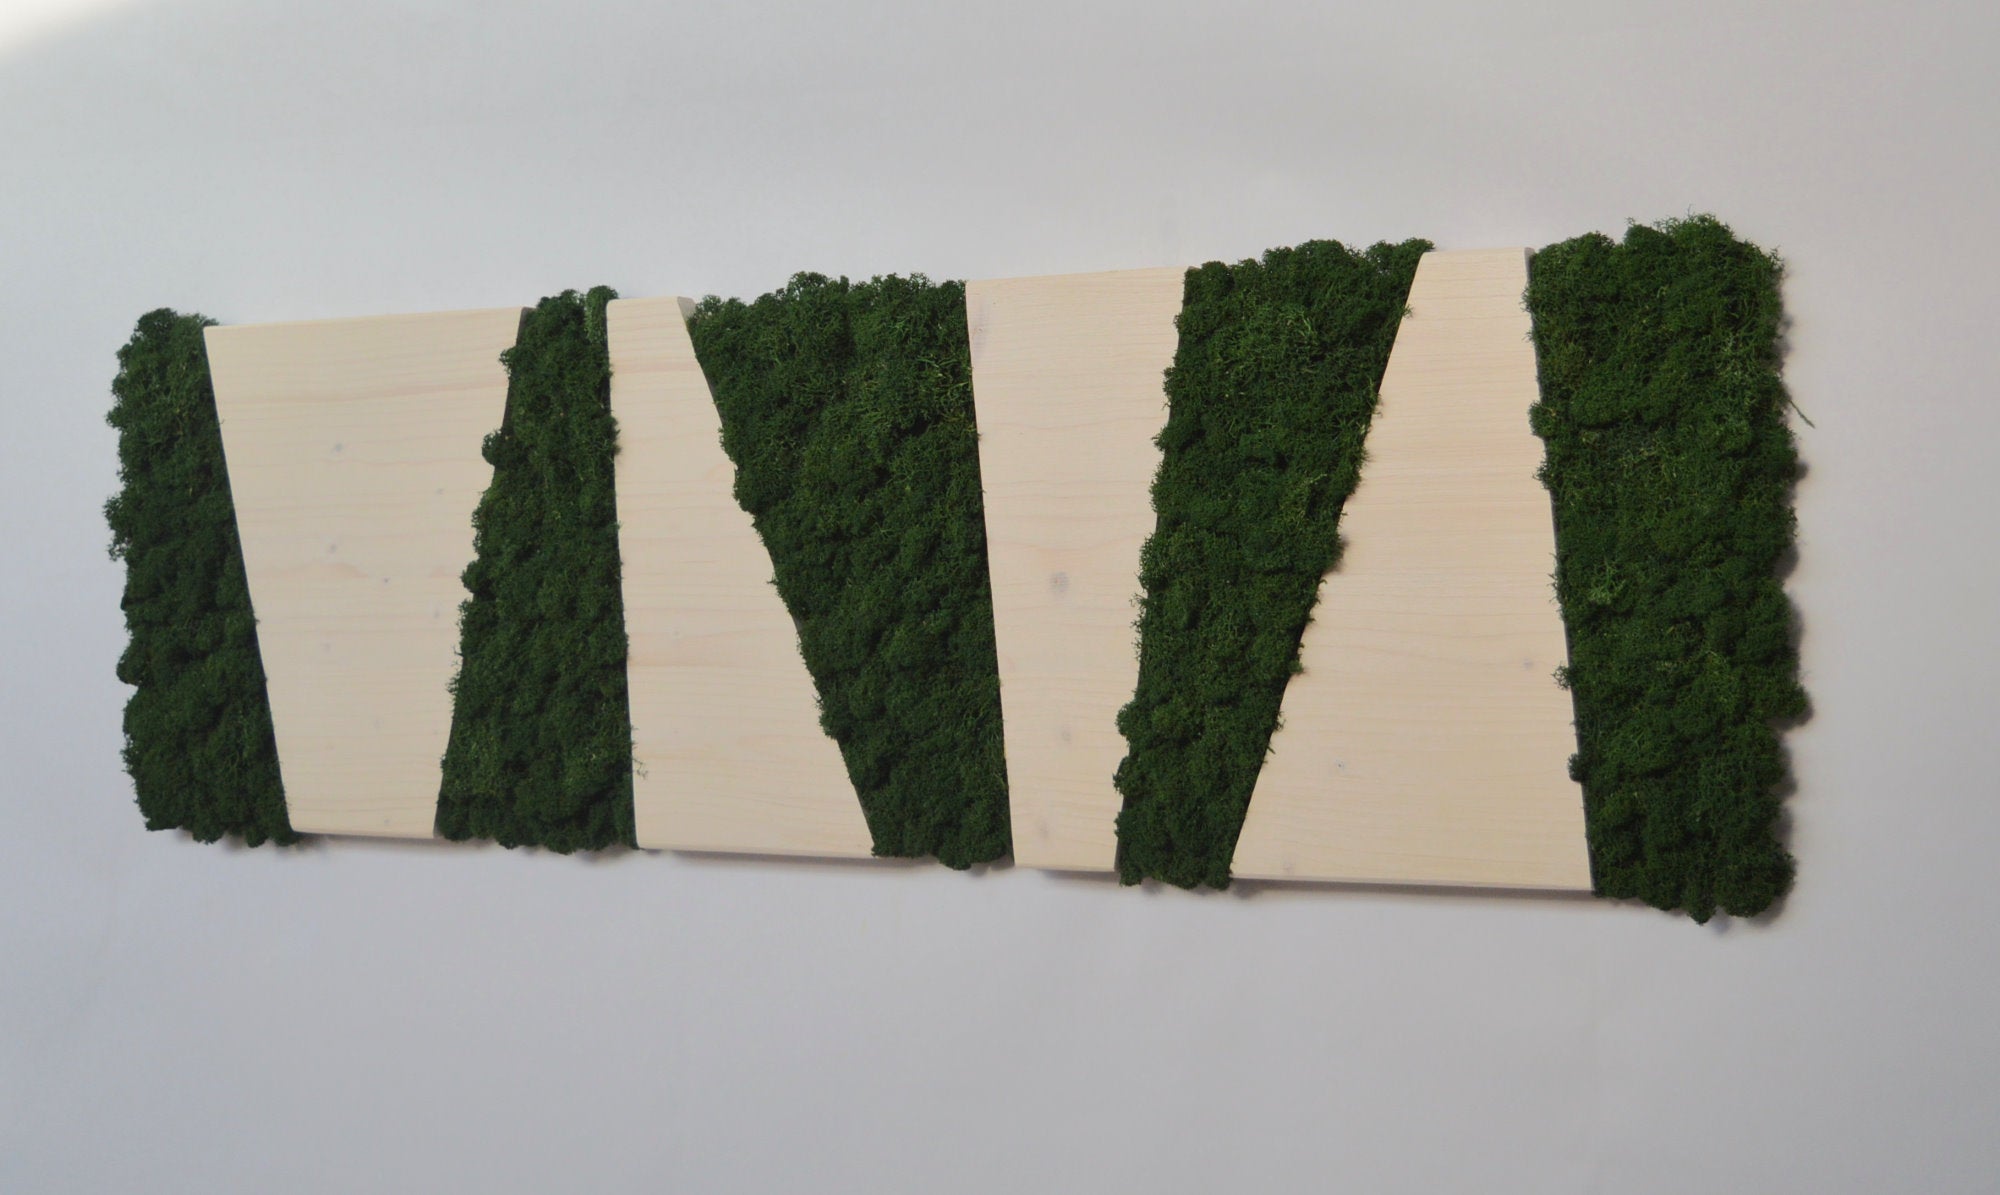 Panneau blanc, cadre rectangulaire en bois et lichens déshydratés, stabilisé